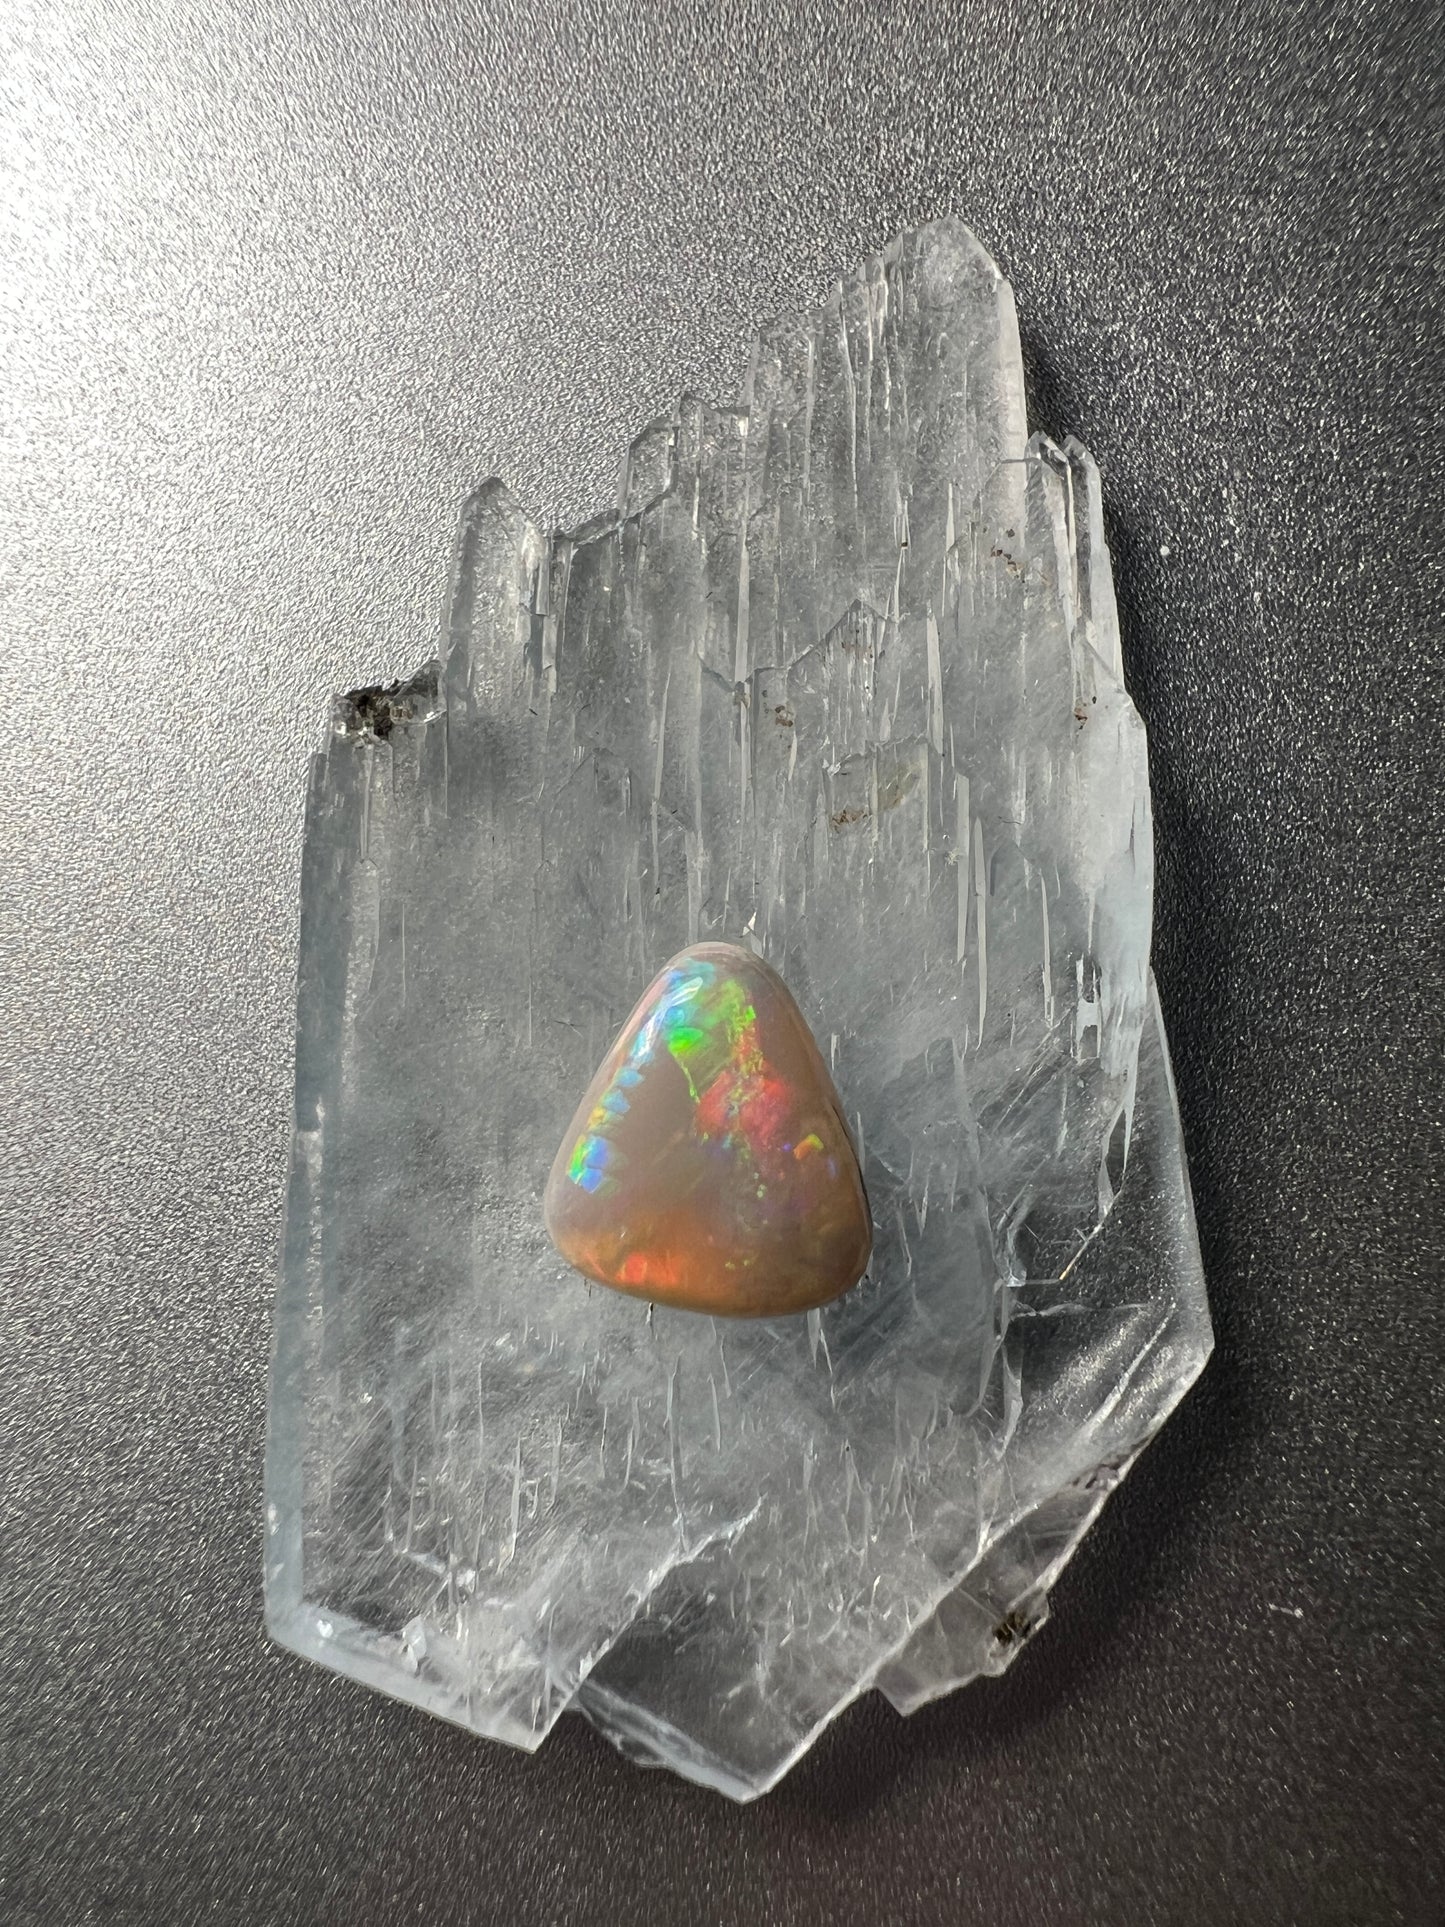 0.92 ct white opal